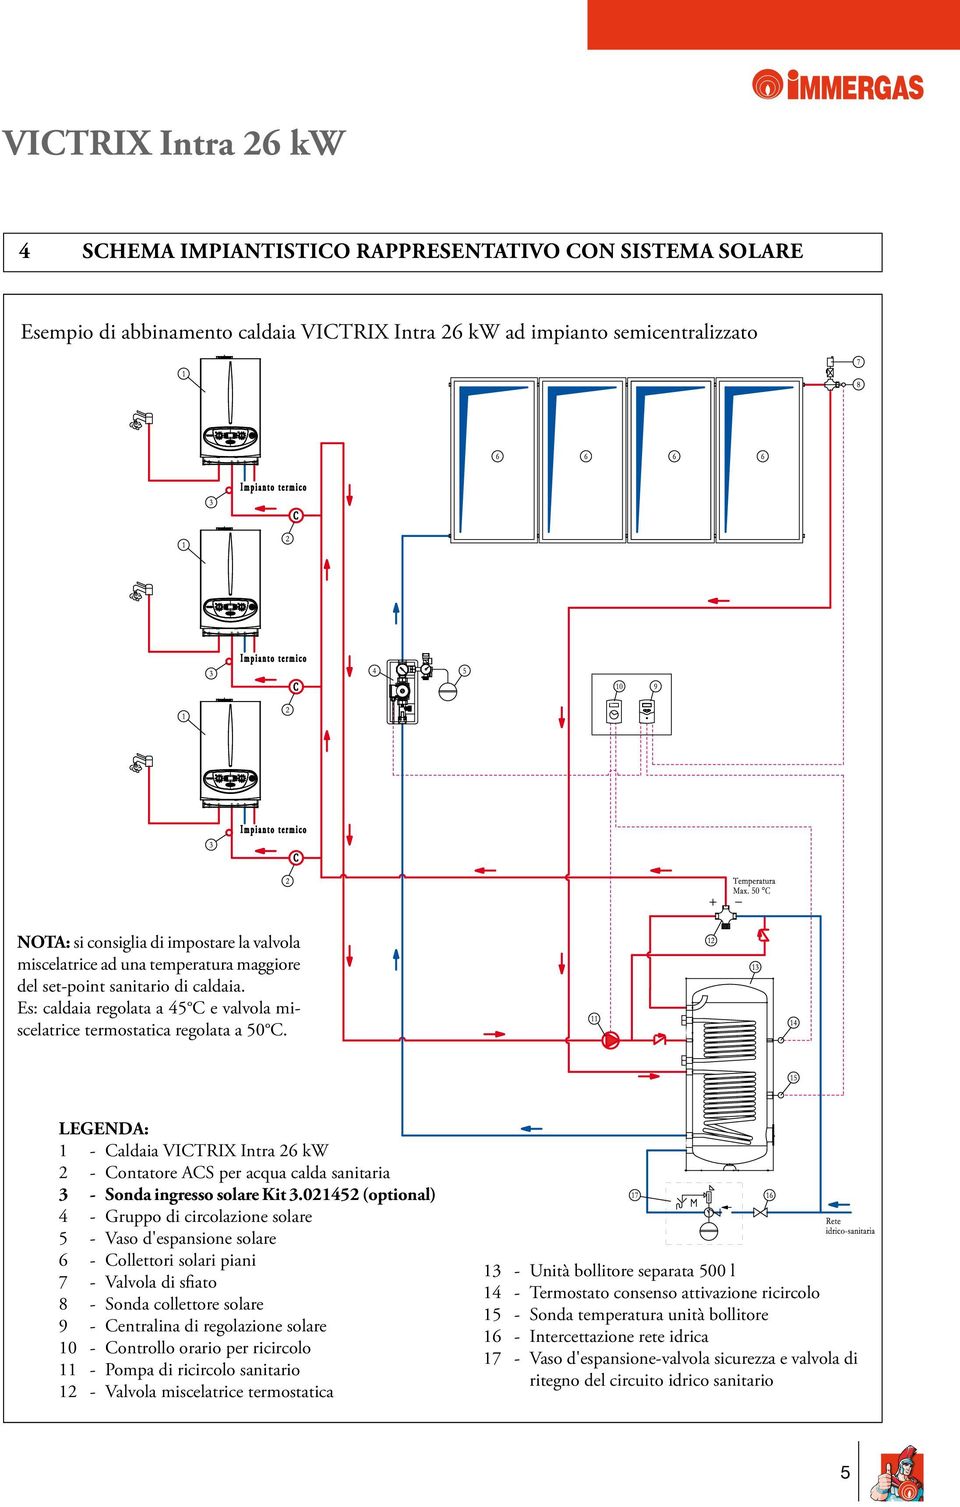 LEGENDA: 1 - Caldaia VICTRIX Intra 26 kw 2 - Contatore ACS per acqua calda sanitaria 3 - Sonda ingresso solare Kit 3.